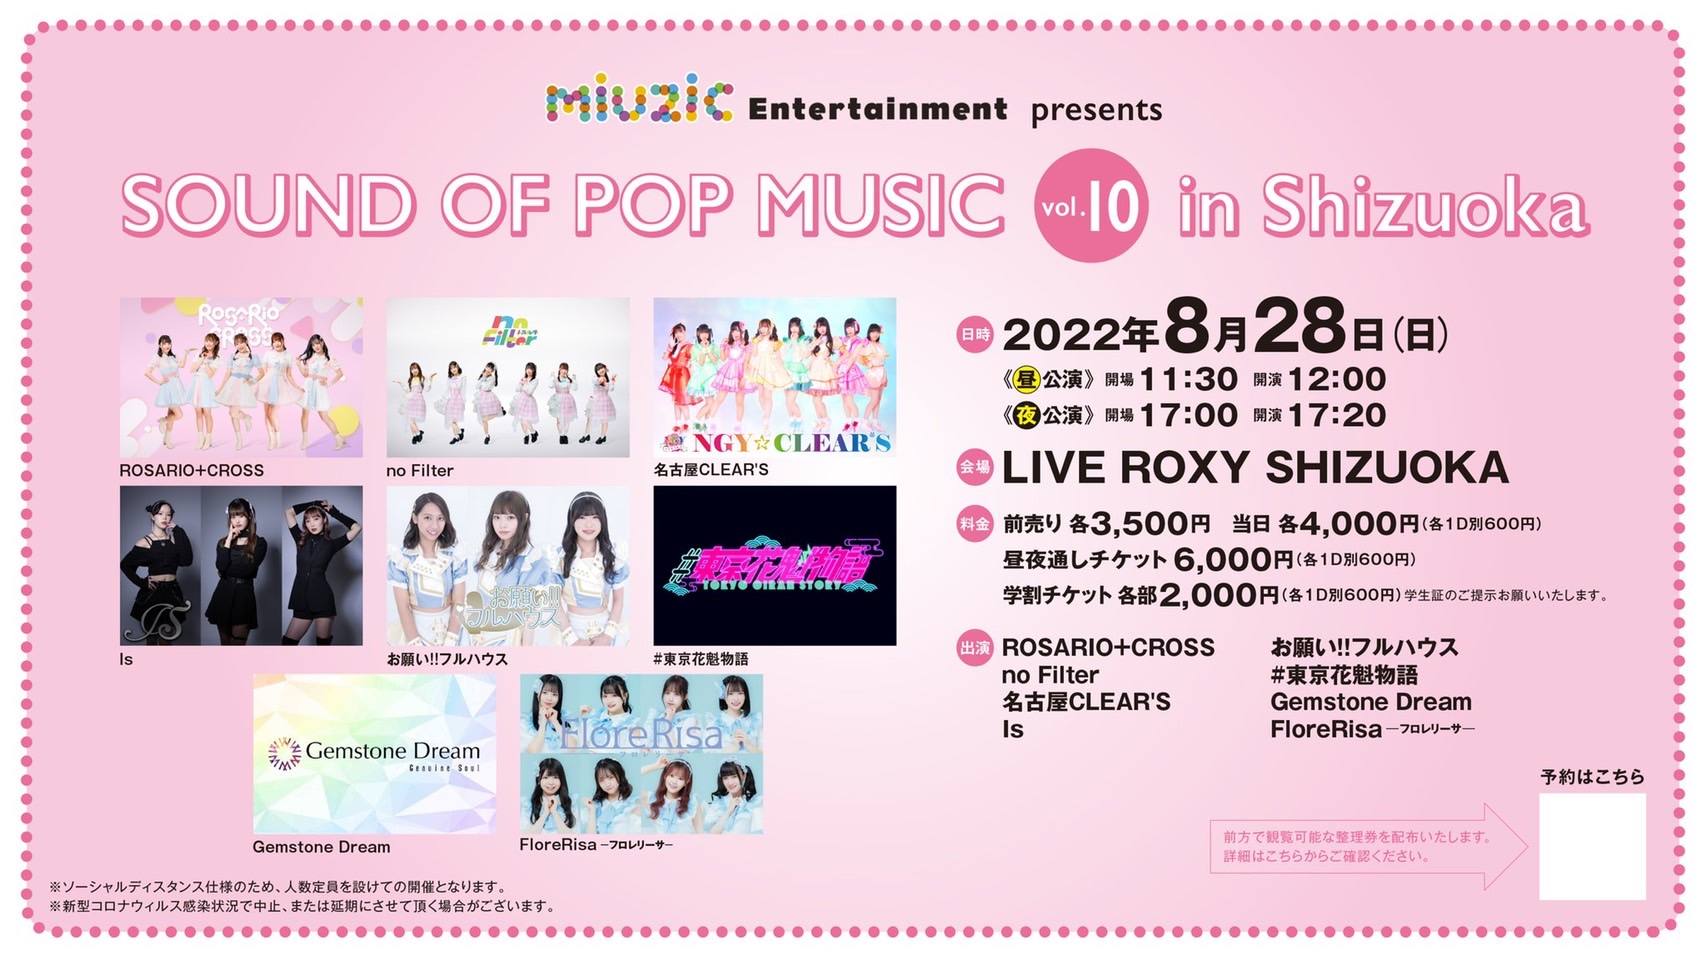 《夜公演》8/28(日) miuzic Entertainment presents 「SOUND OF POP MUSIC vol.10 in Shizuoka」